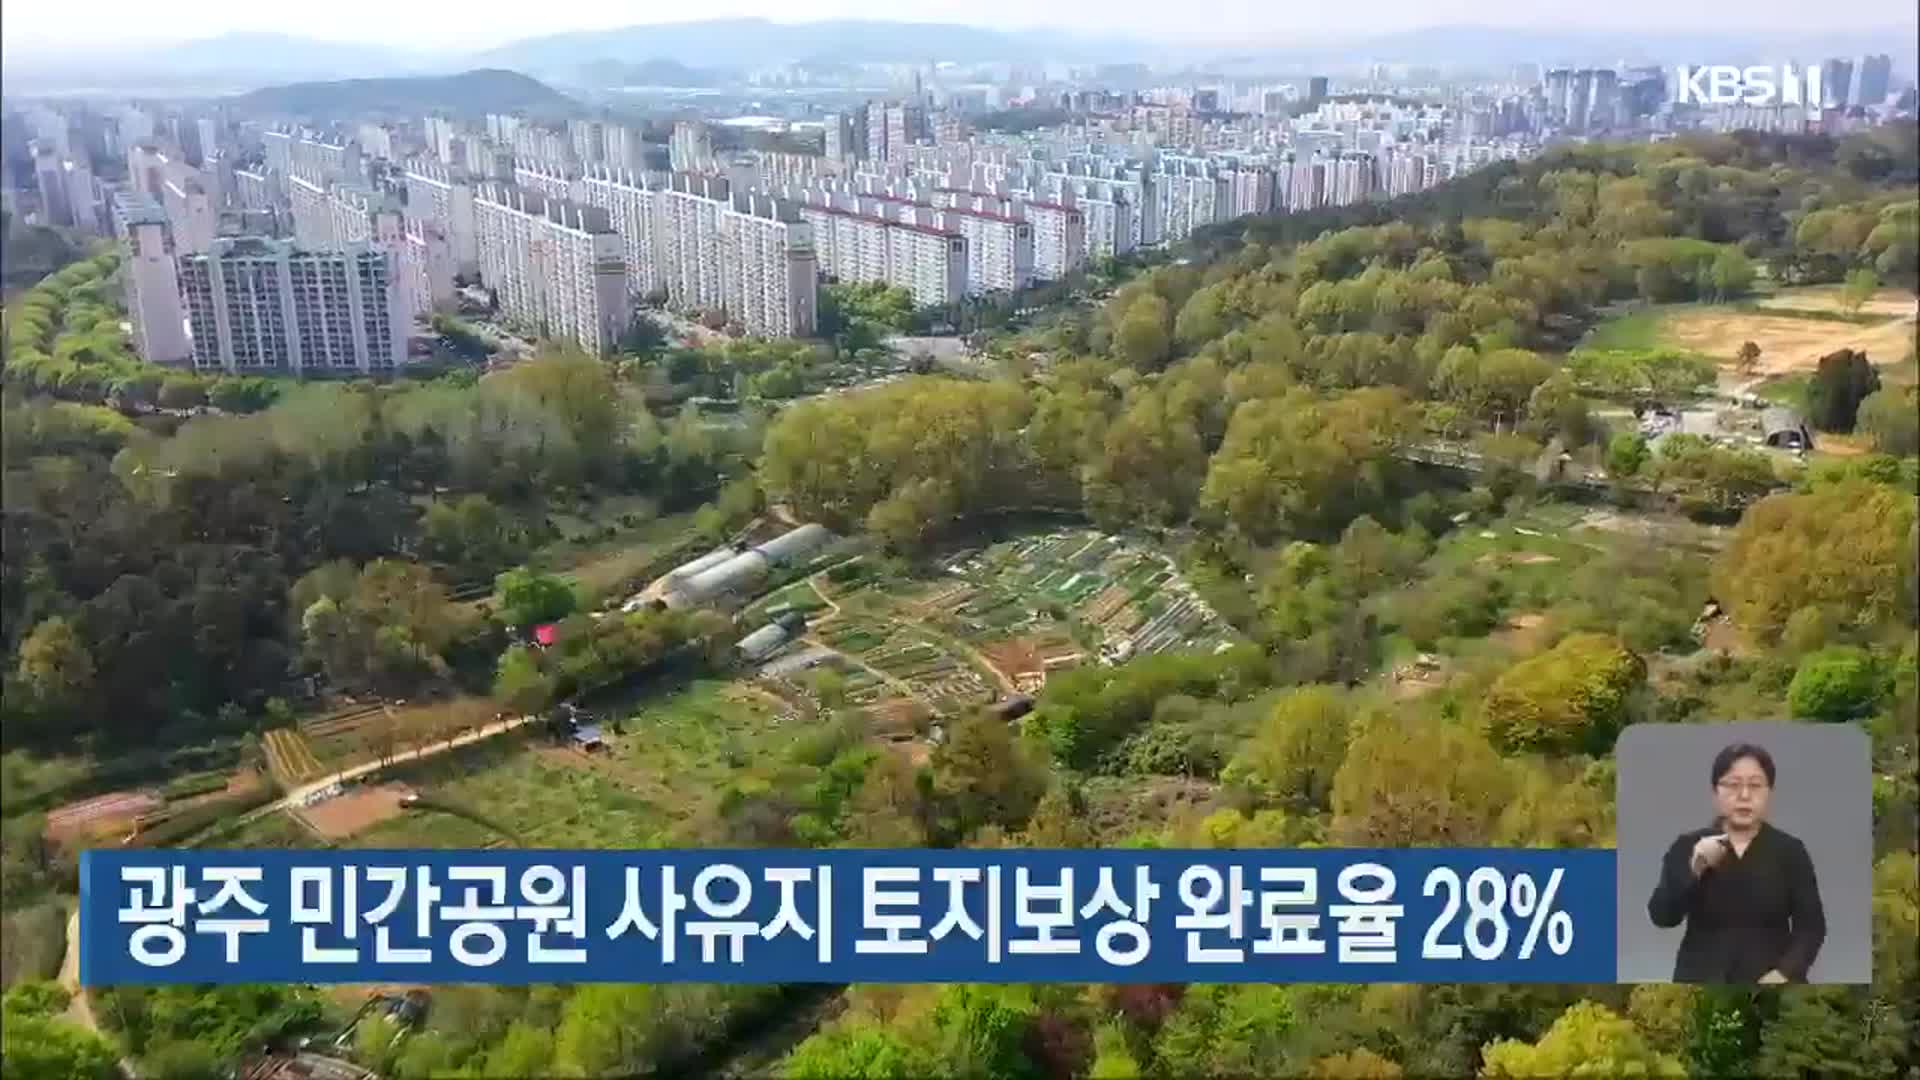 광주 민간공원 사유지 토지보상 완료율 28%